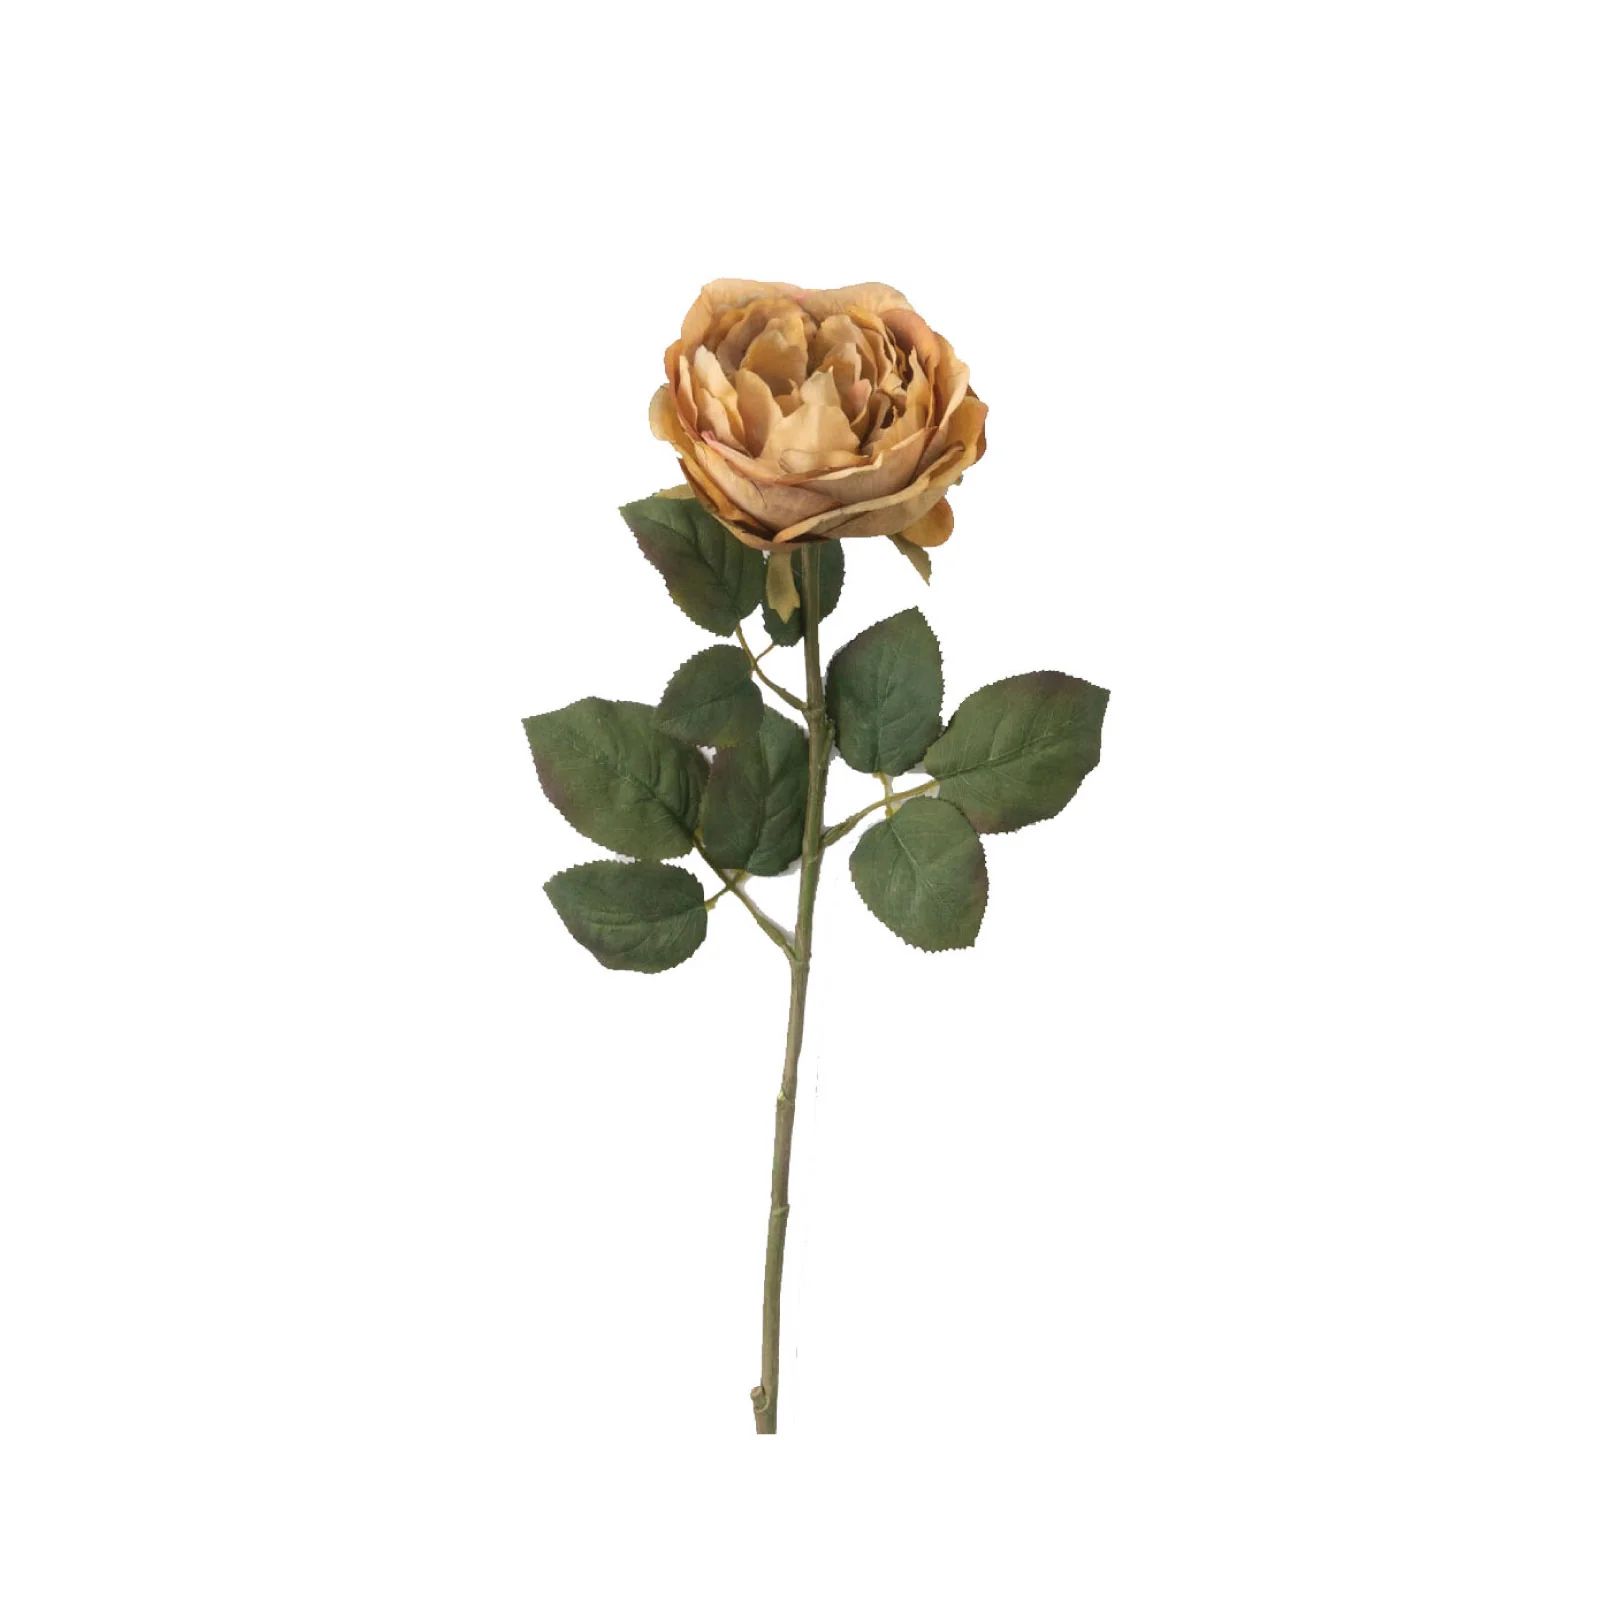 Vintage Copper Rose Stem | Brooke and Lou